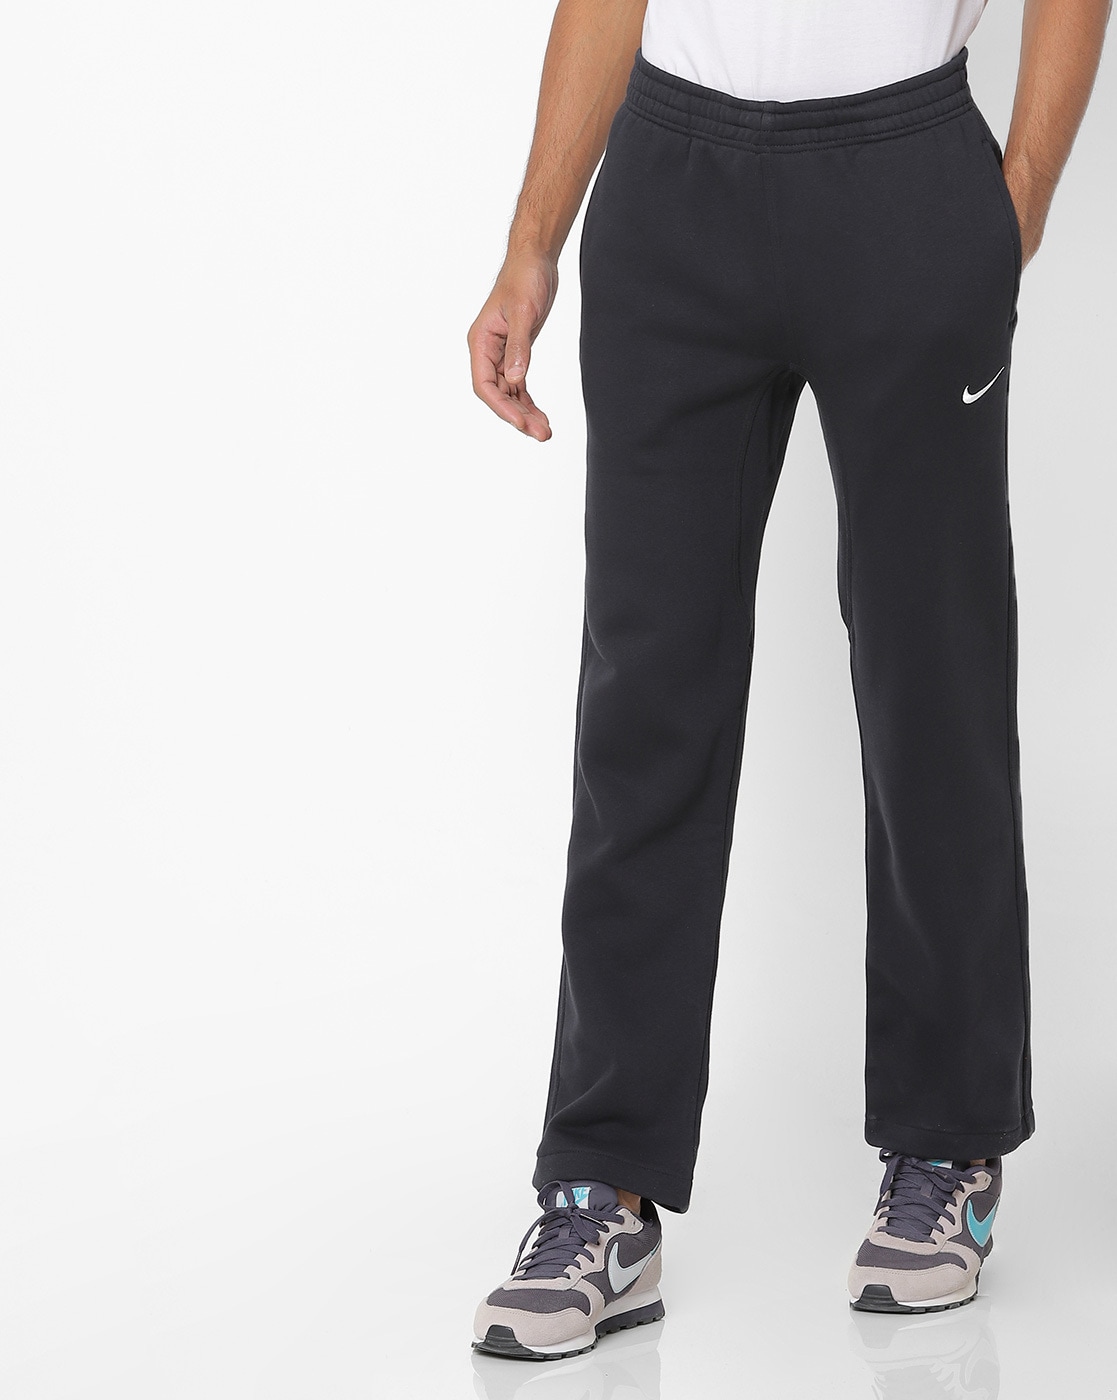 Nike  Sportswear Club Fleece Mens Pants  Open Hem Fleece Jogging Bottoms   SportsDirectcom